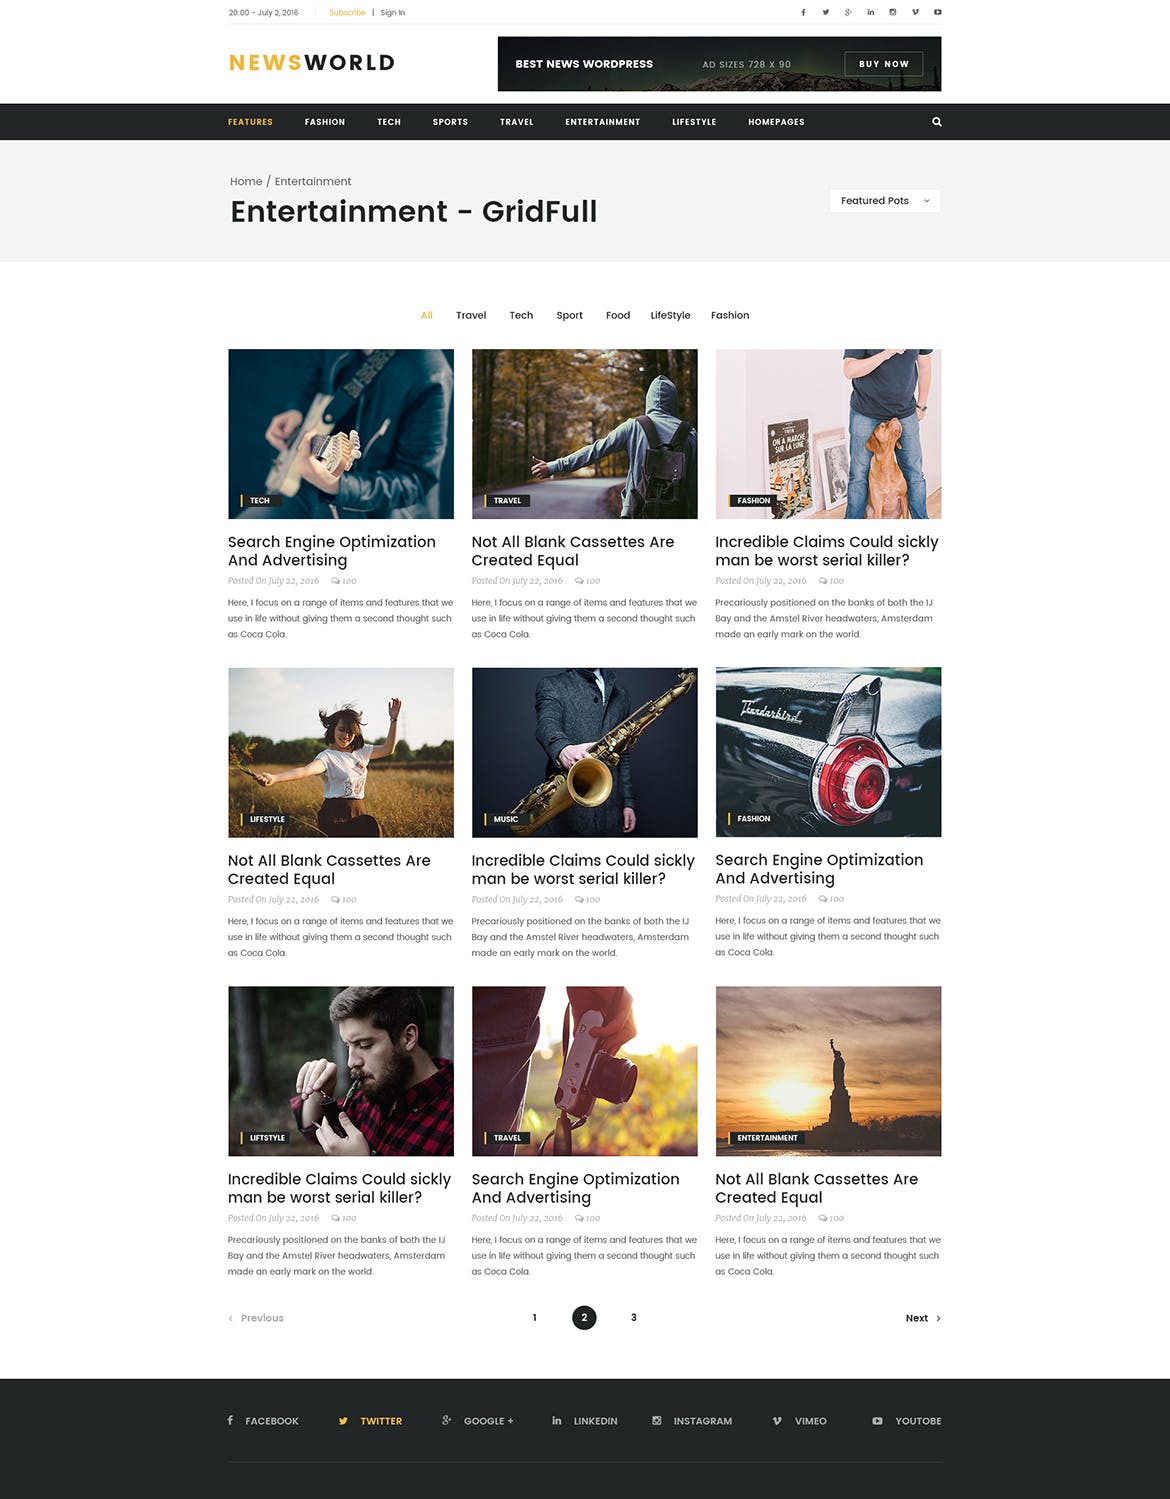 新闻资讯杂志类网站设计HTML模板第一素材精选 Newsworld | Mutil-Concept Magazine HTML5 Template插图(8)